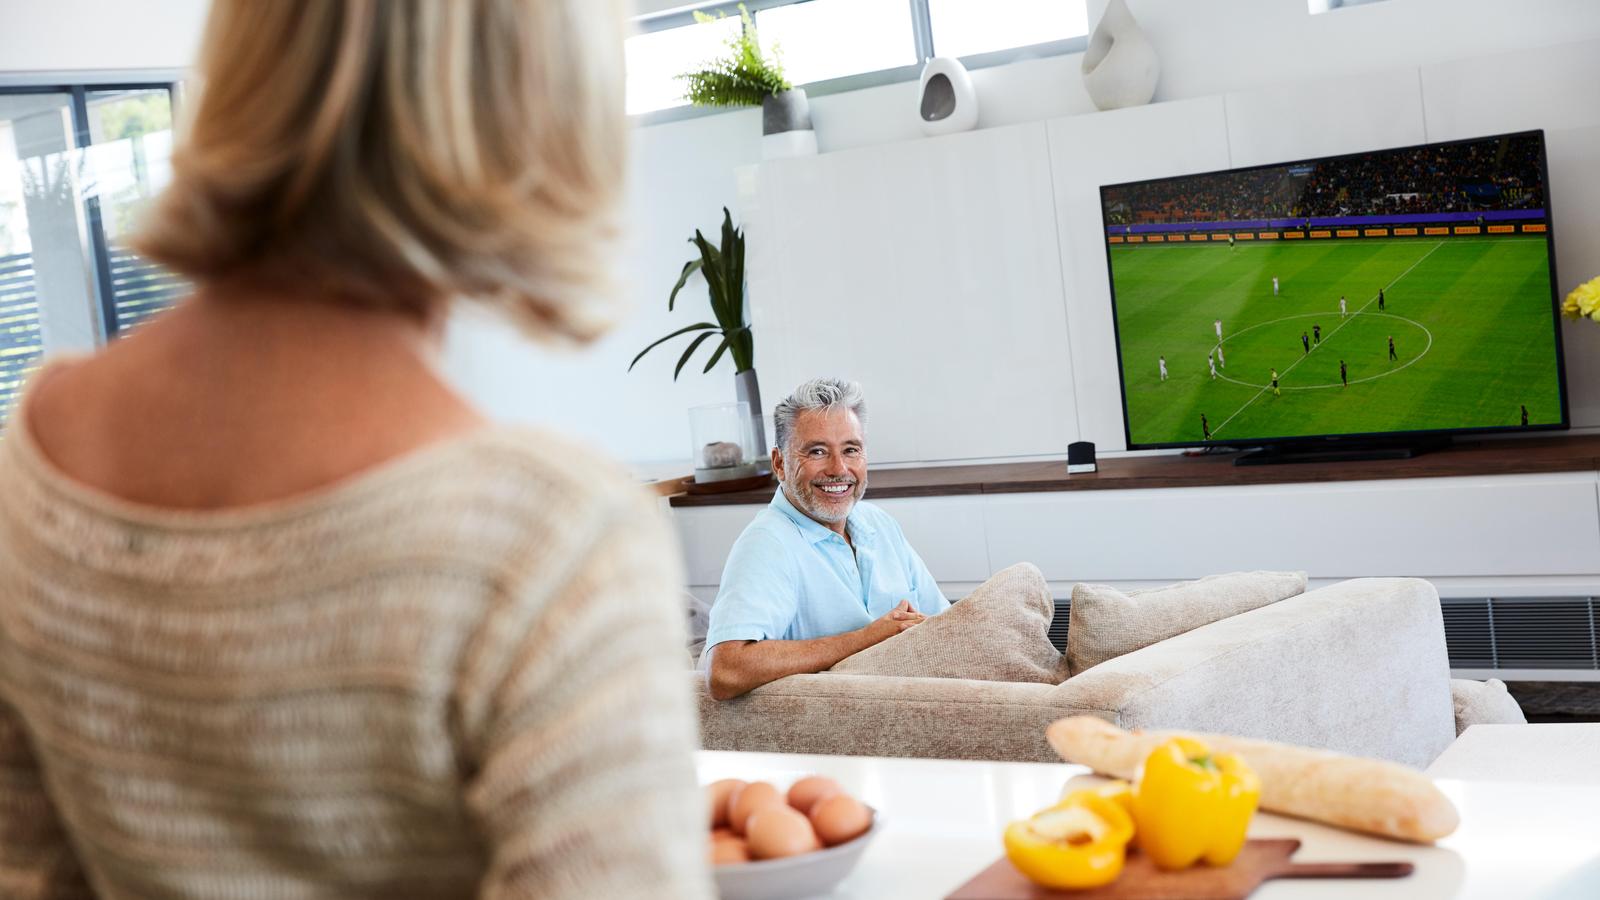 Cochlear Wireless TV Streamer (TV Aksesuarı) ile televizyonda futbol maçı izleyen yetişkin bir erkek